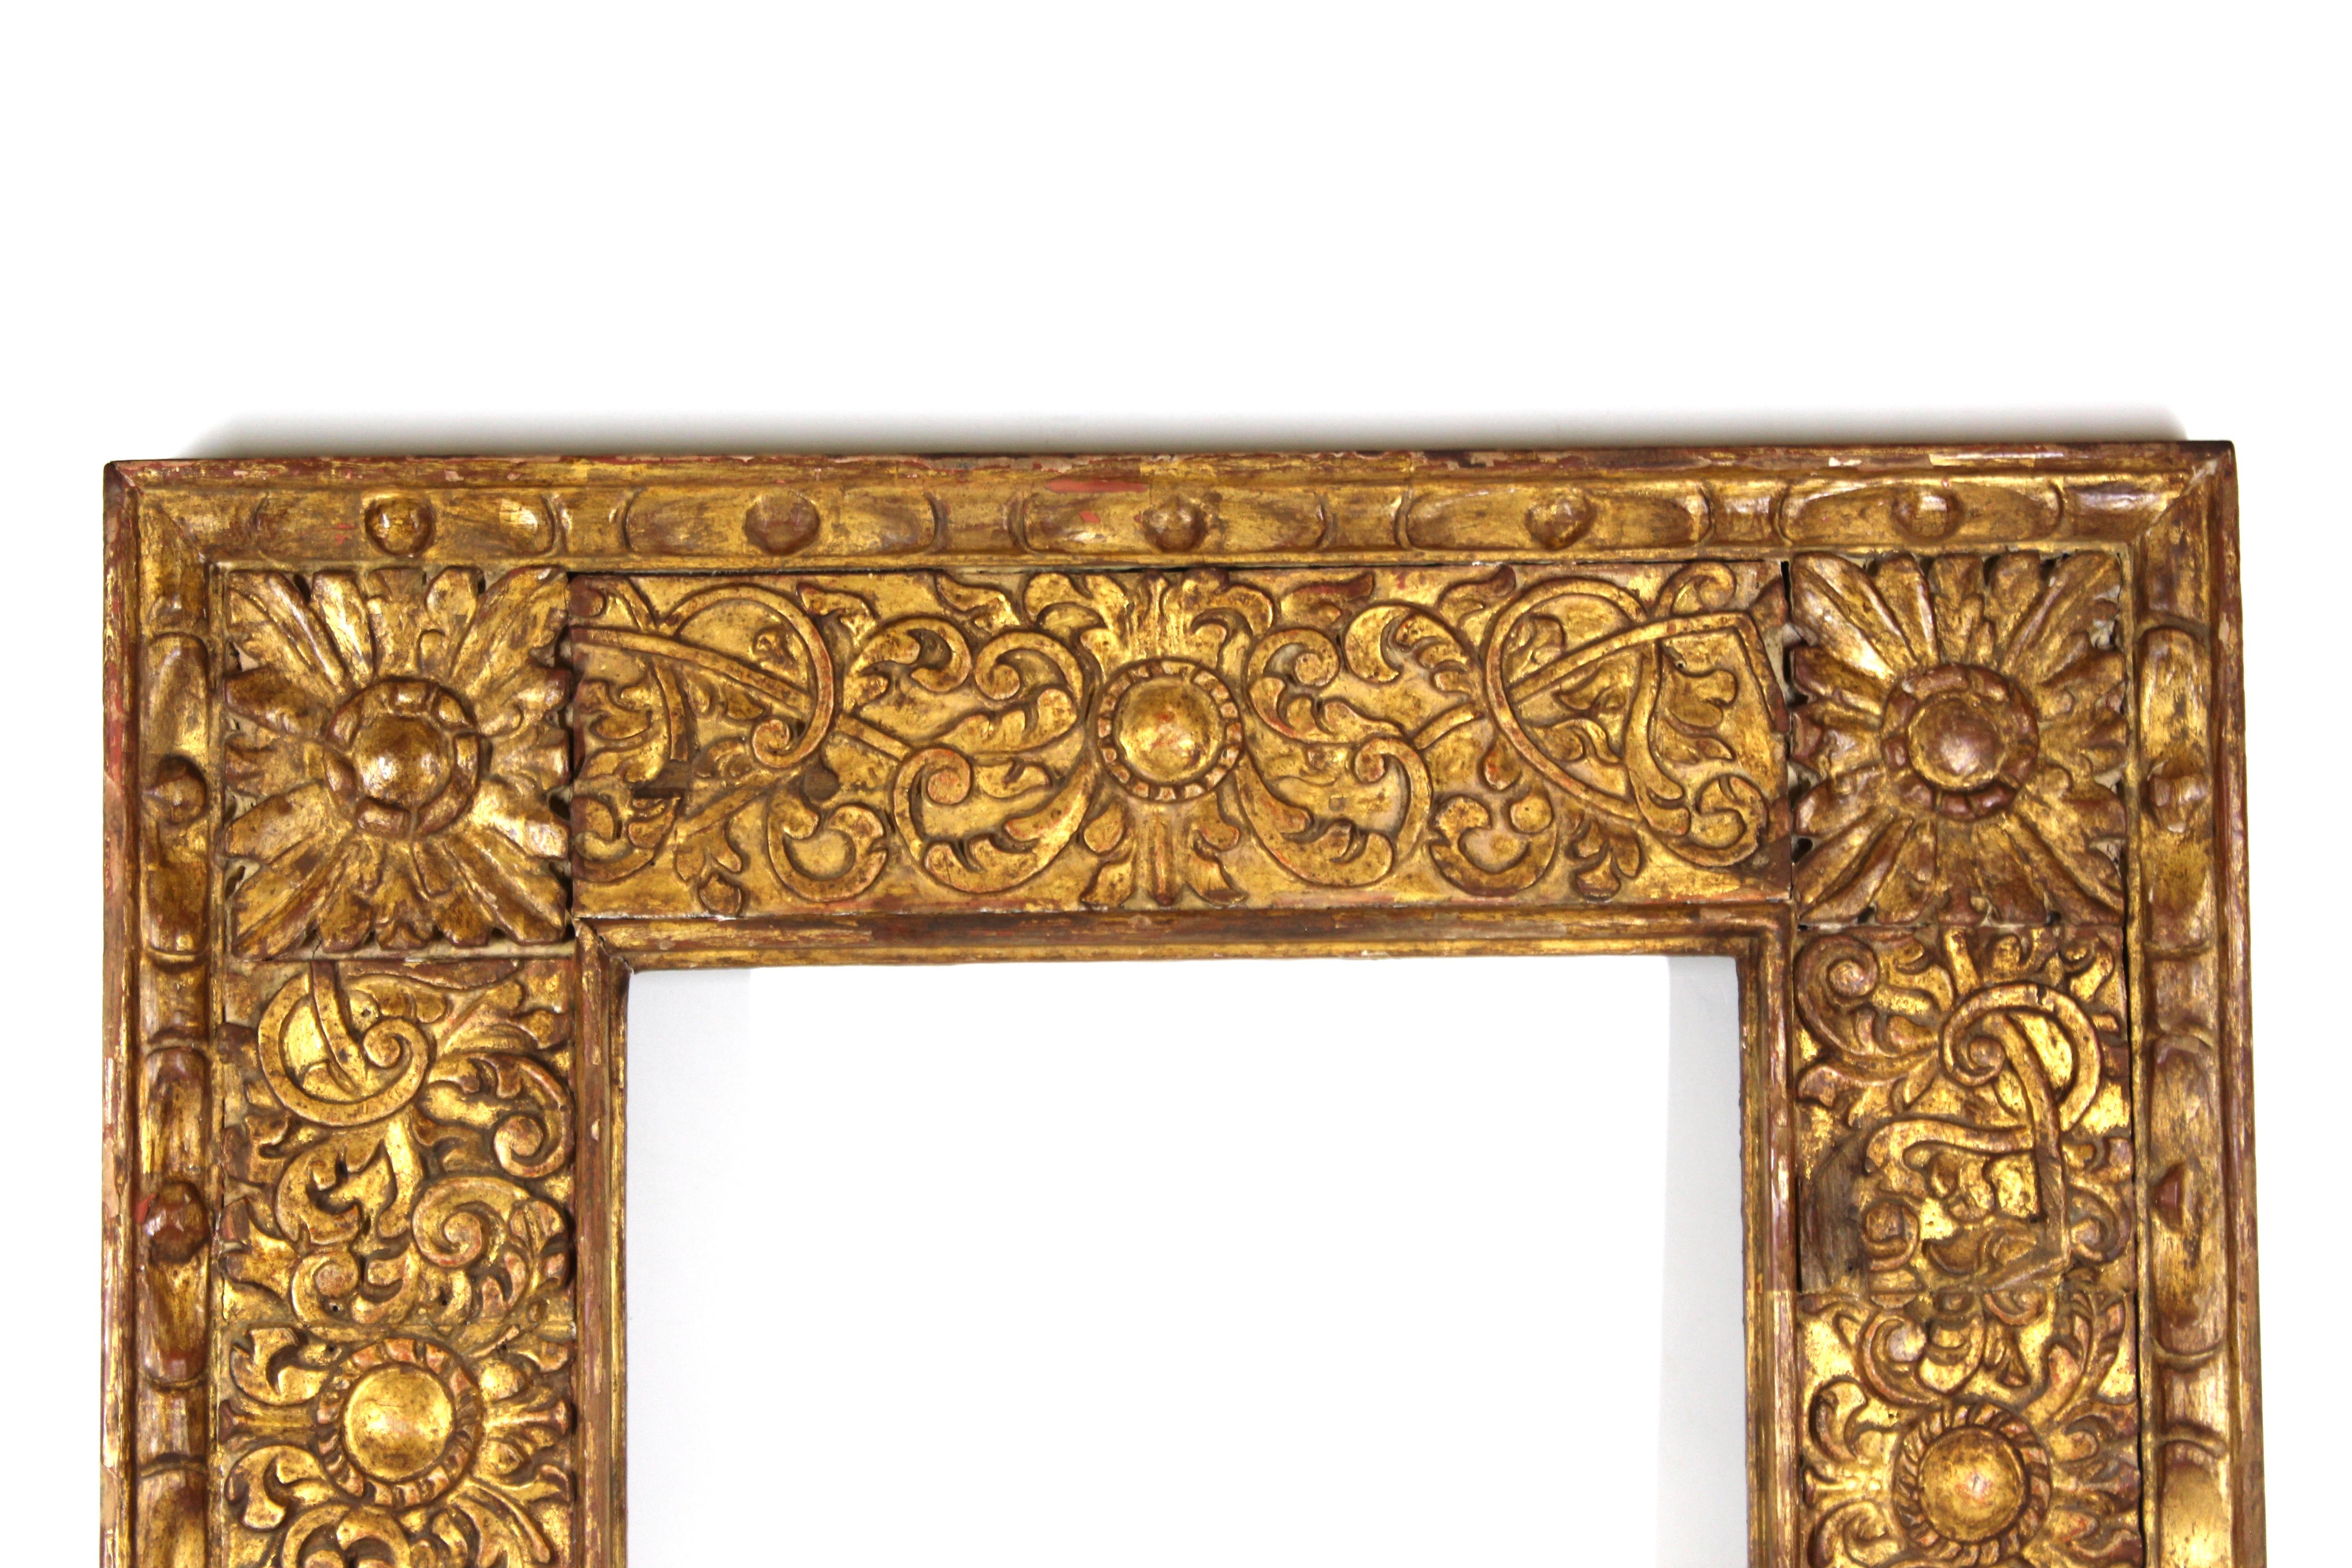 Cadre en bois doré de style baroque colonial espagnol avec un feuillage élaboré lourdement sculpté et doré à la main. Les volutes, feuilles et éléments floraux décoratifs font de ce cadre un exemple exceptionnel de la période baroque, parfait pour